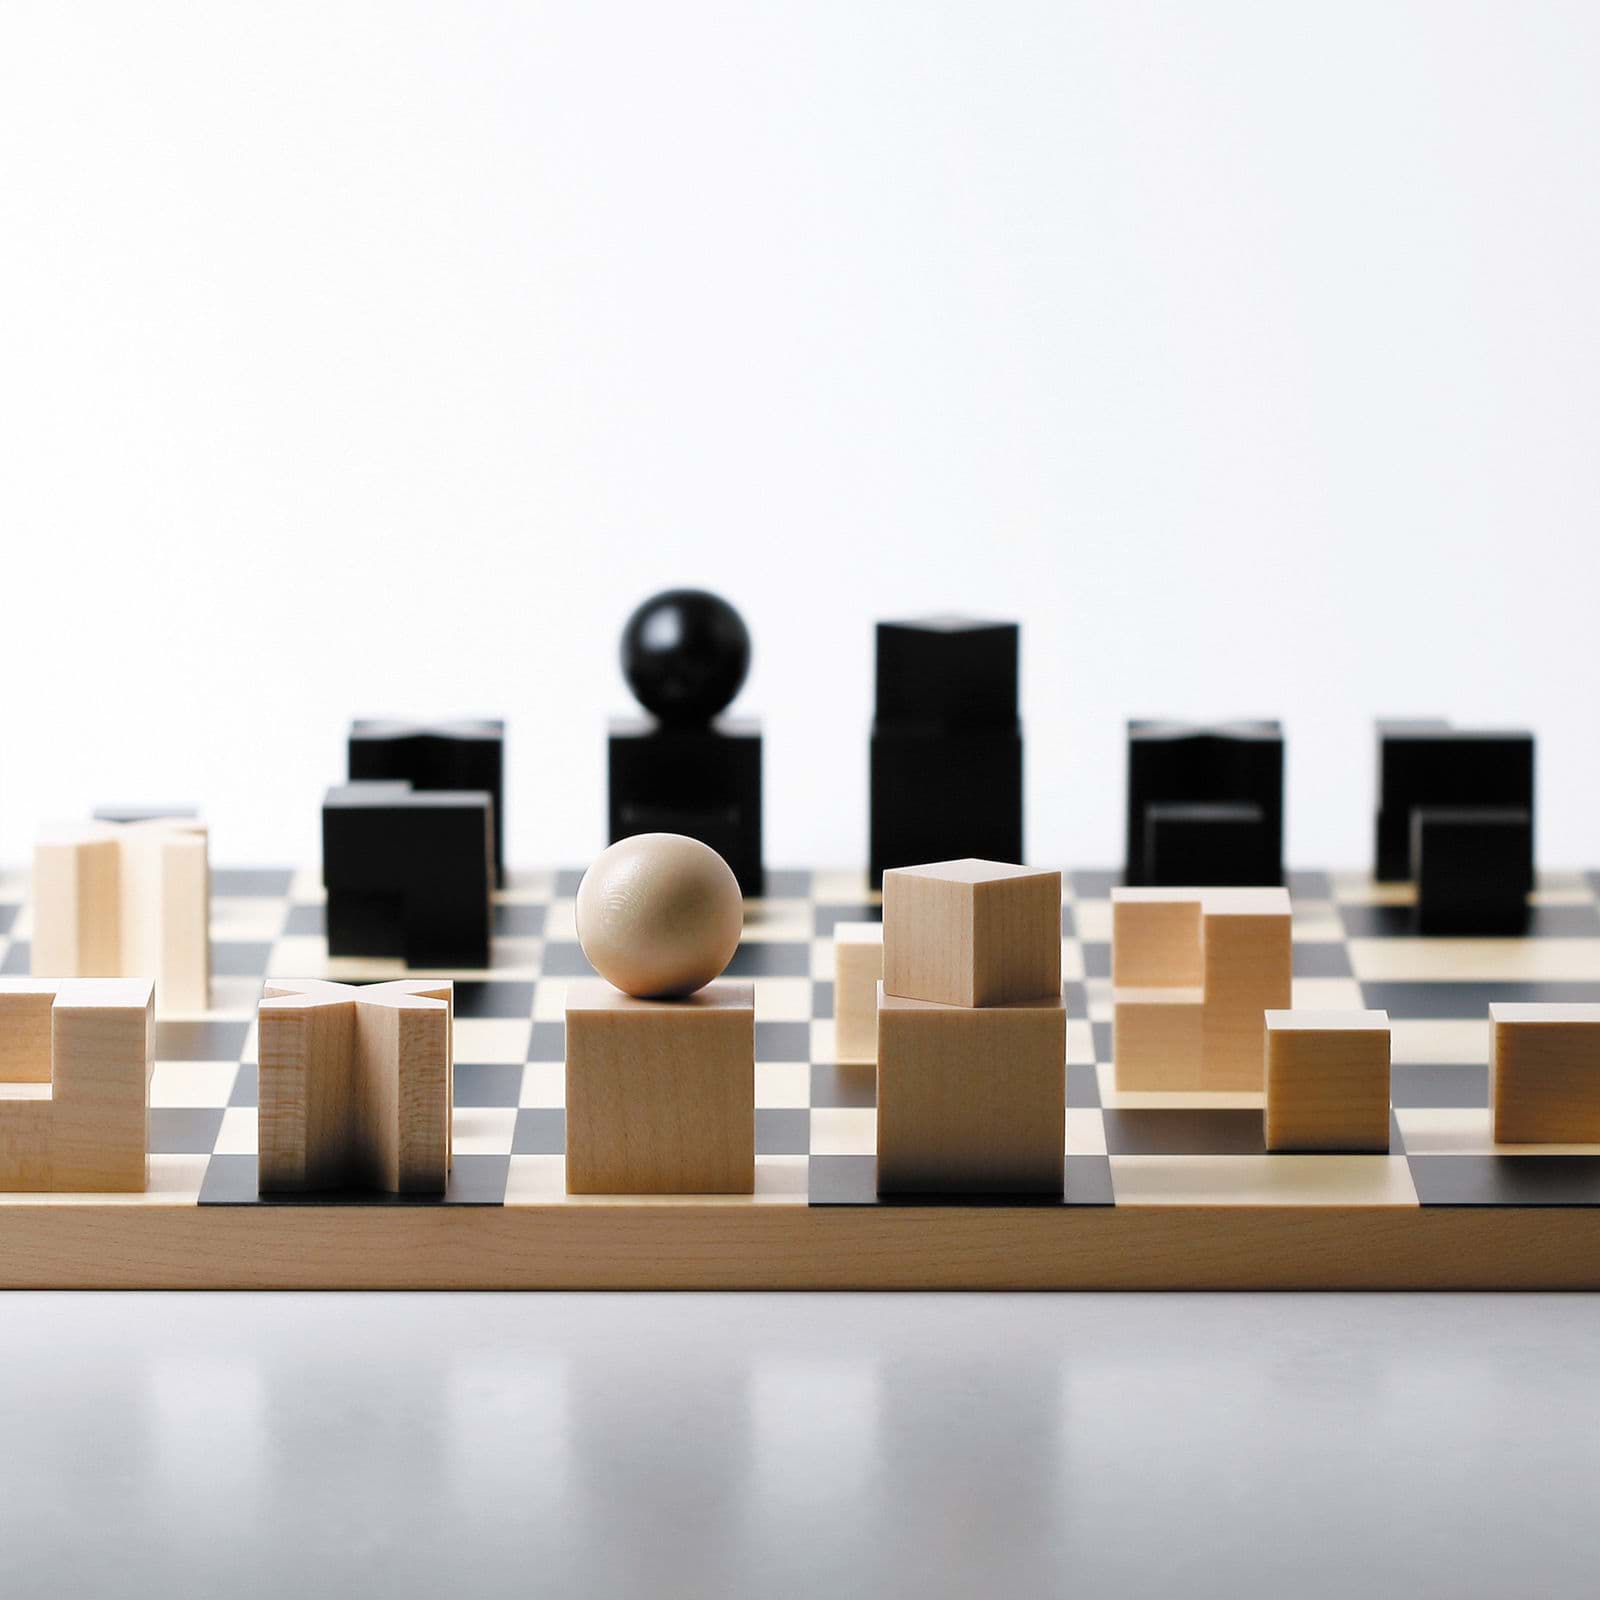 जोसेफ हार्टविग द्वारा स्थापित बॉहॉस शतरंज की तस्वीर